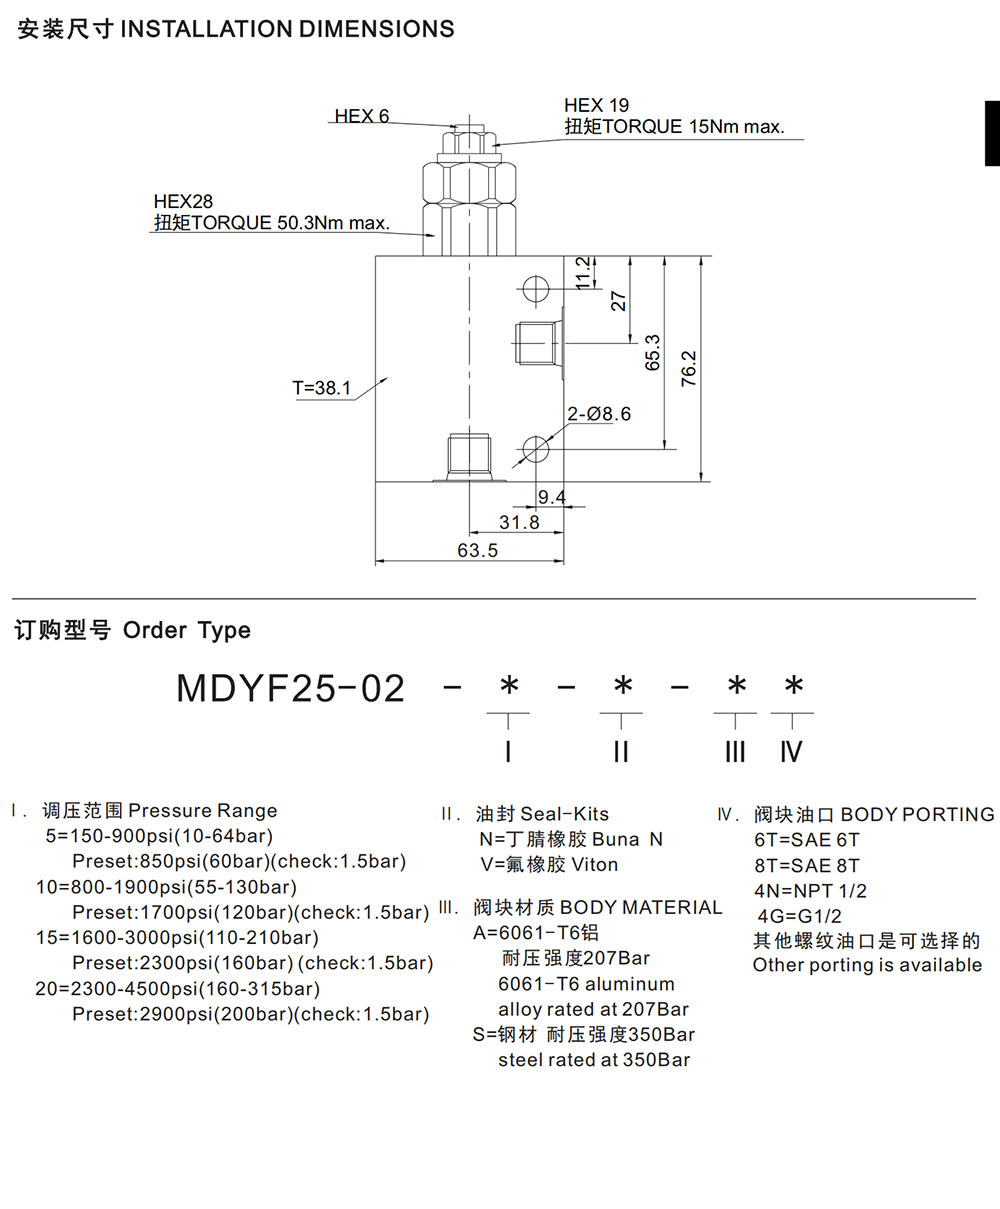 MDYF25-02